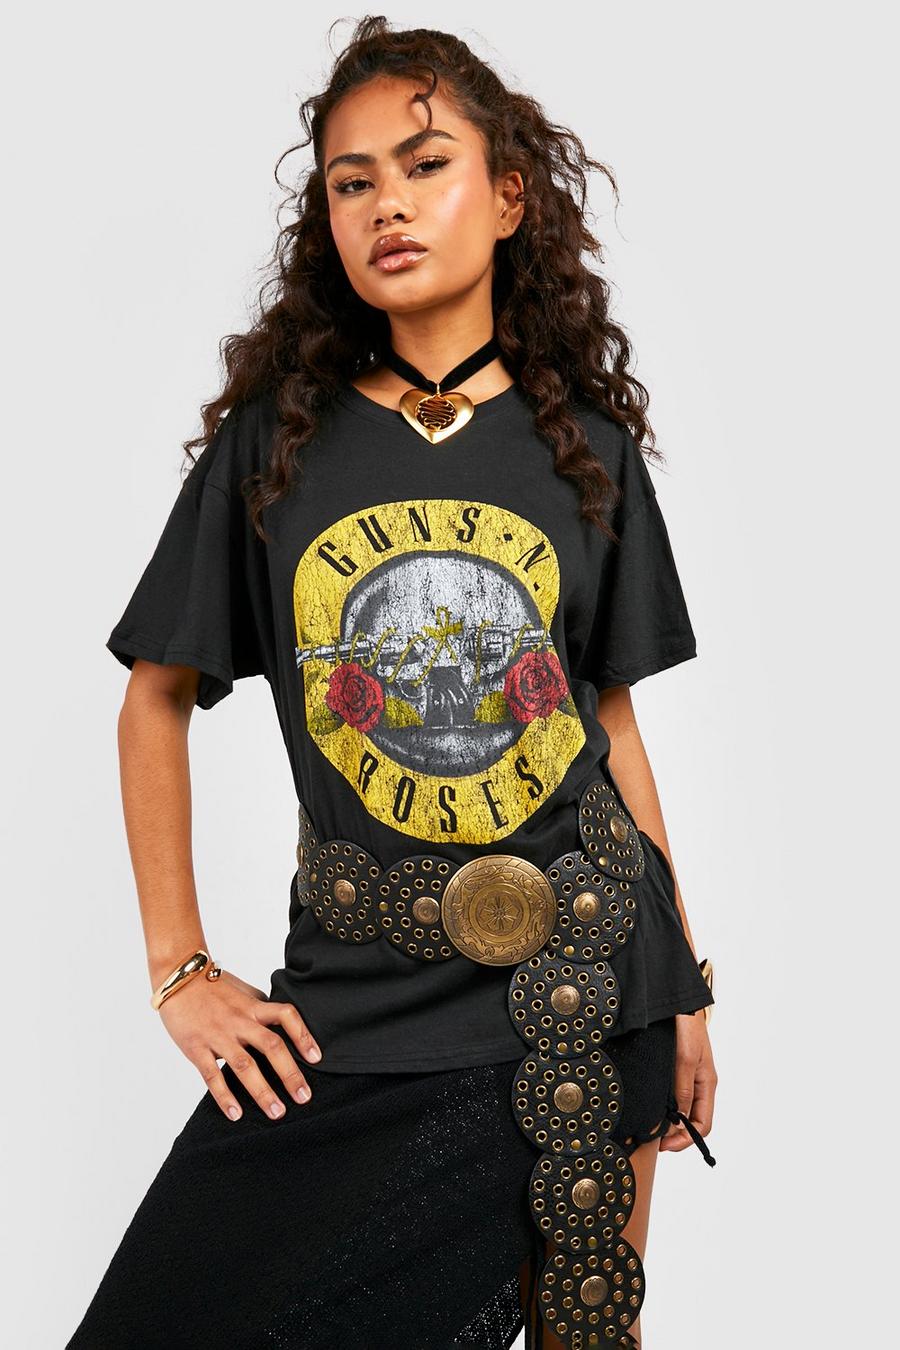 Black Guns N Roses Oversize t-shirt image number 1